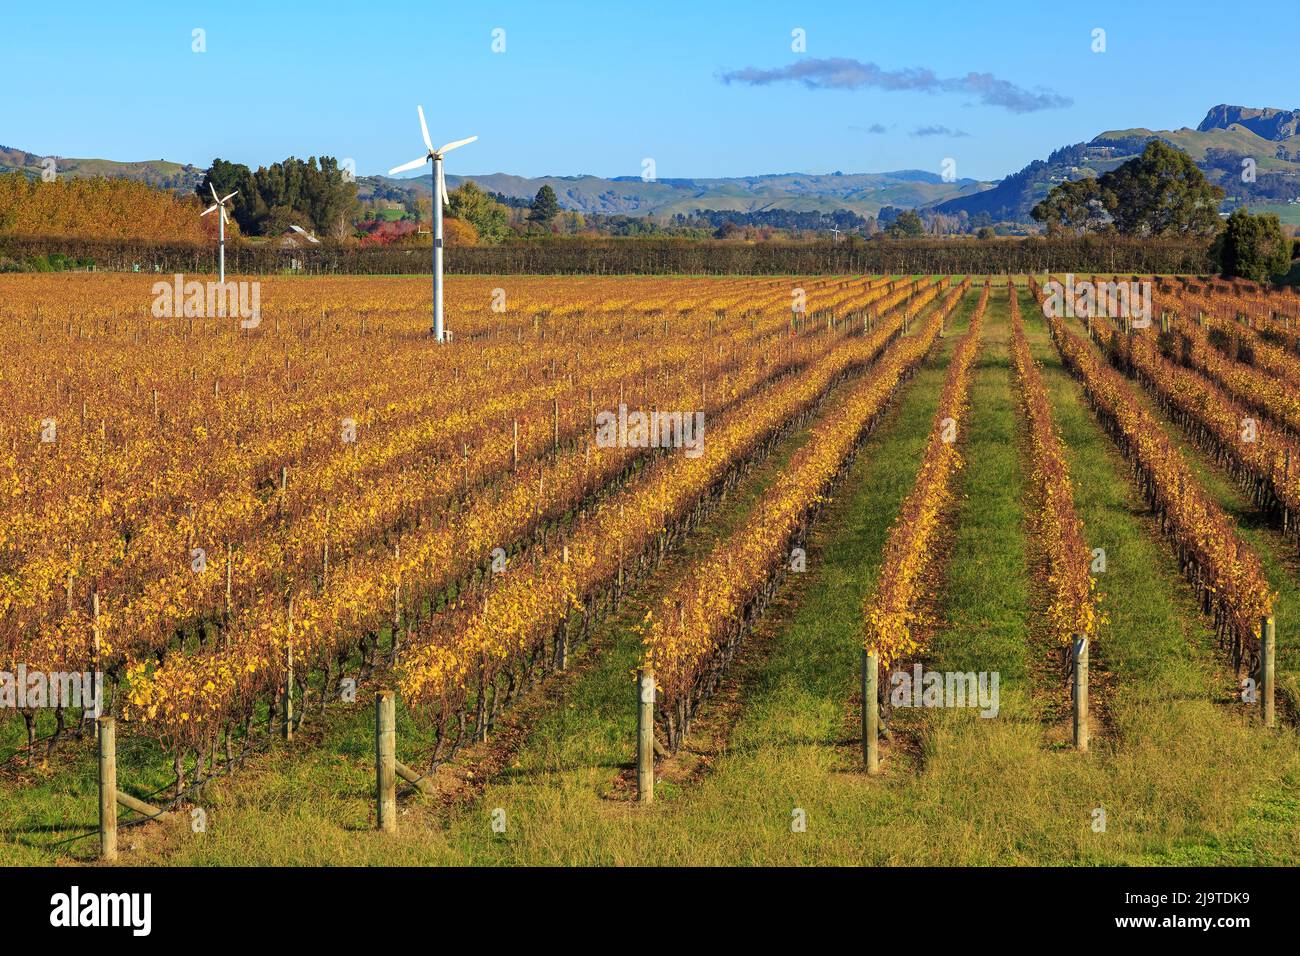 File di viti su un vigneto in autunno, con macchine a vento per proteggere l'uva dal gelo. Hawke's Bay, Nuova Zelanda Foto Stock